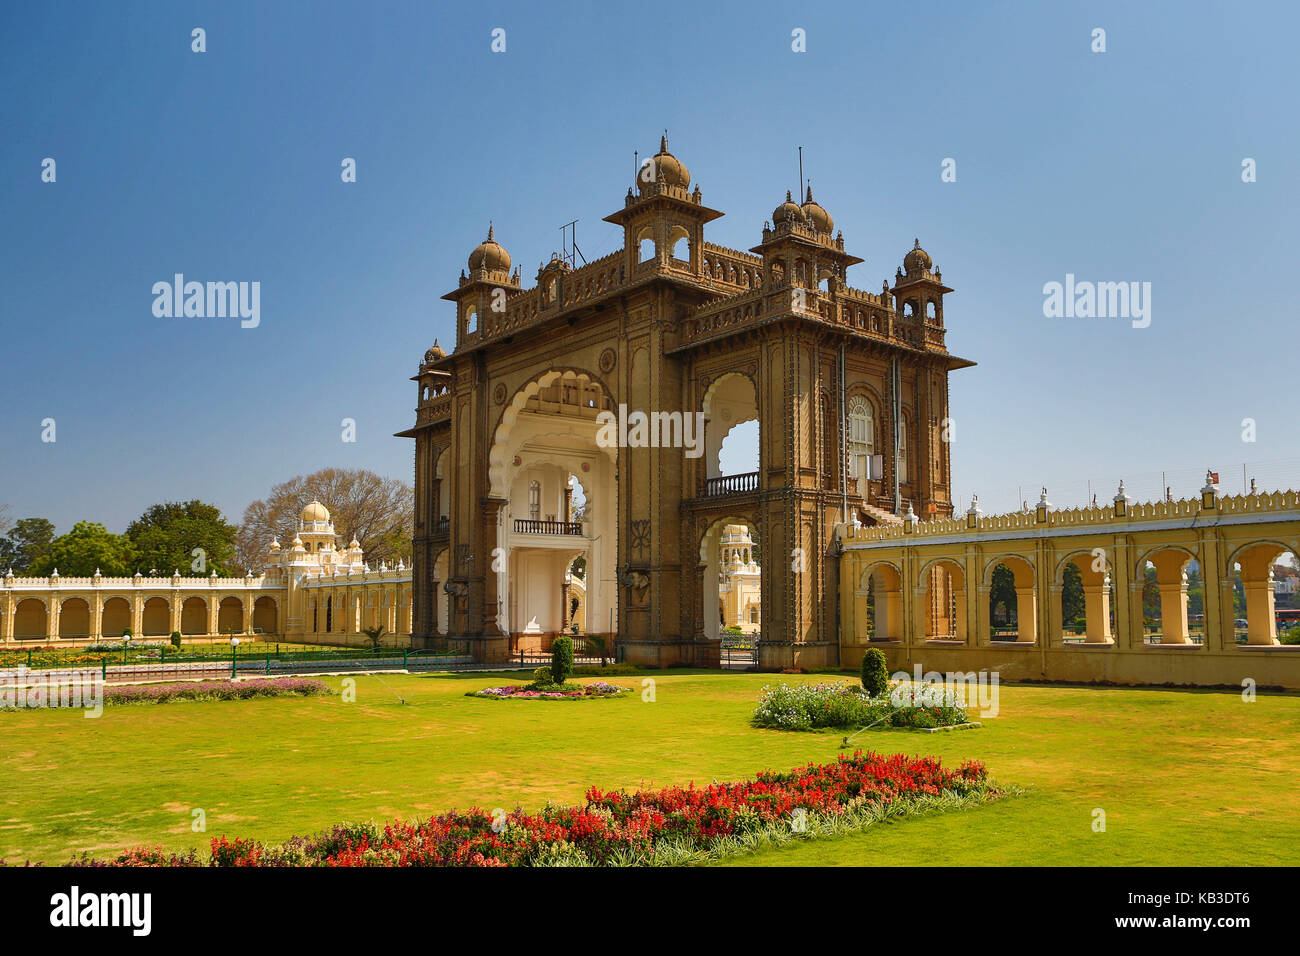 India, Karnataka, Mysore, palace of Mysore, main entrance Stock Photo